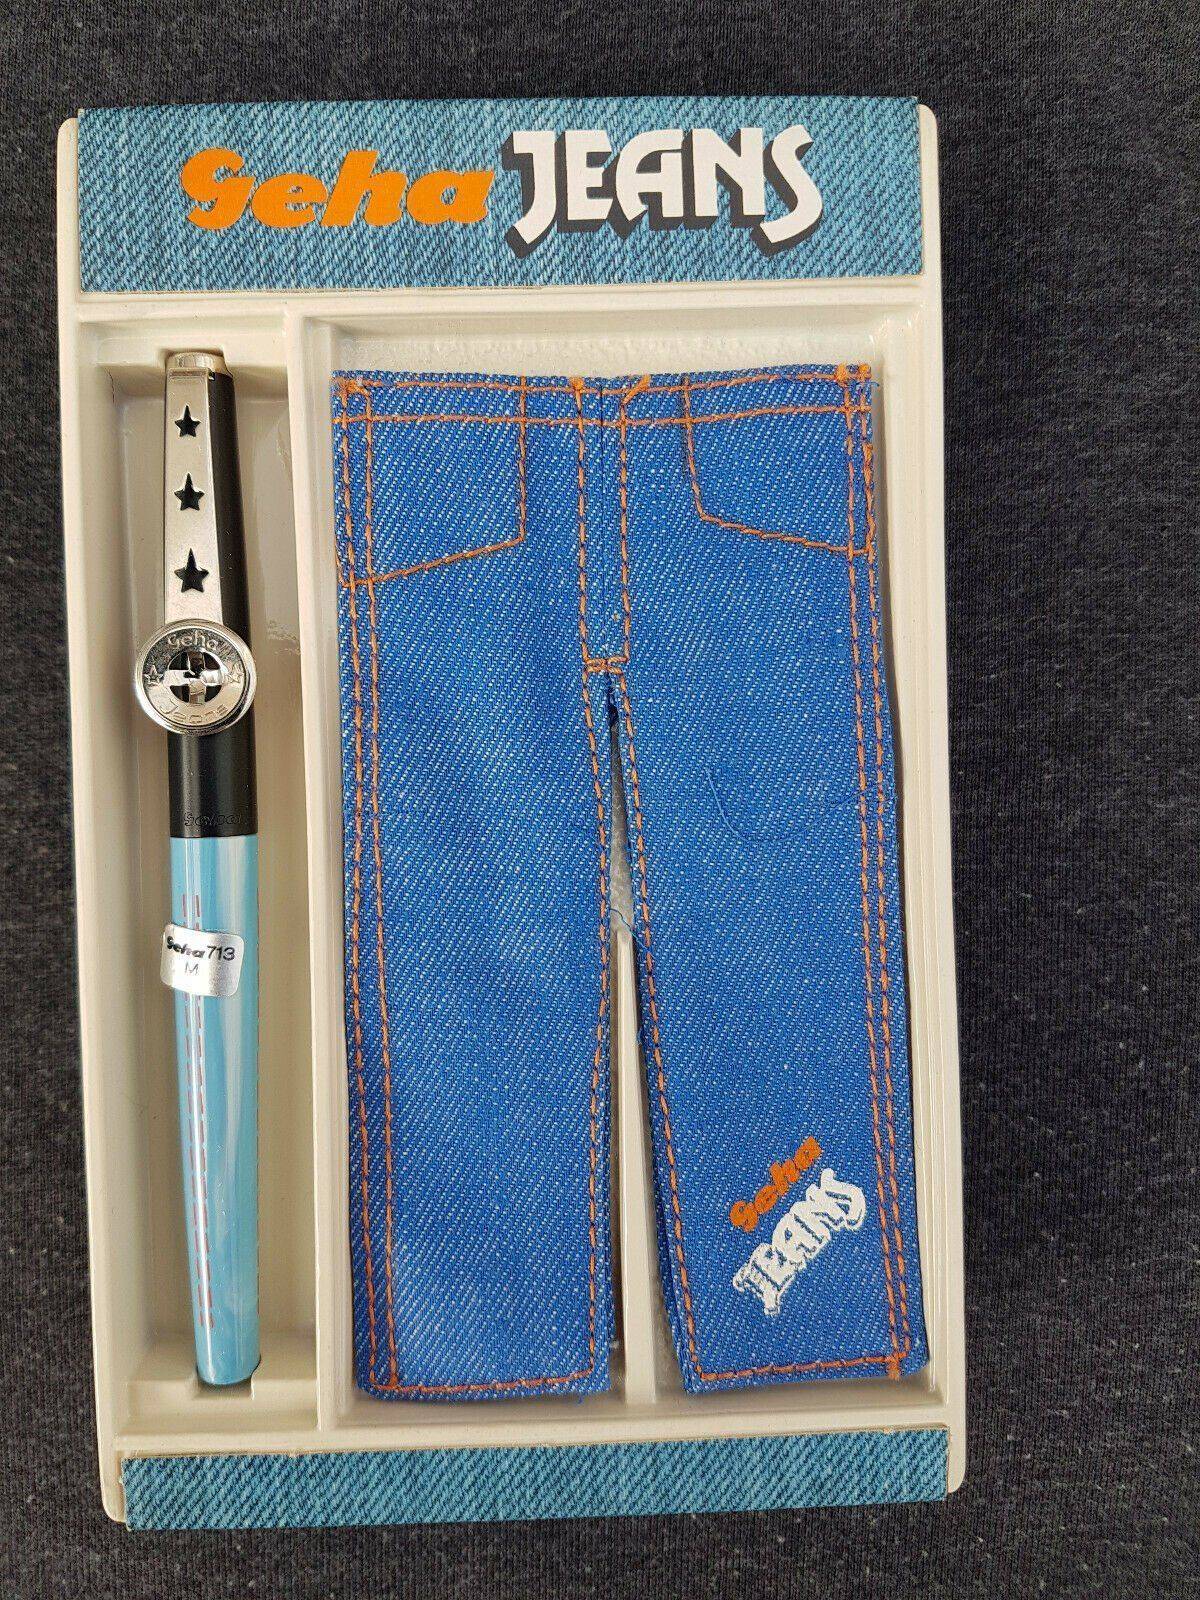 Geha jeans 713 - 851 schulfüller 1.jpg